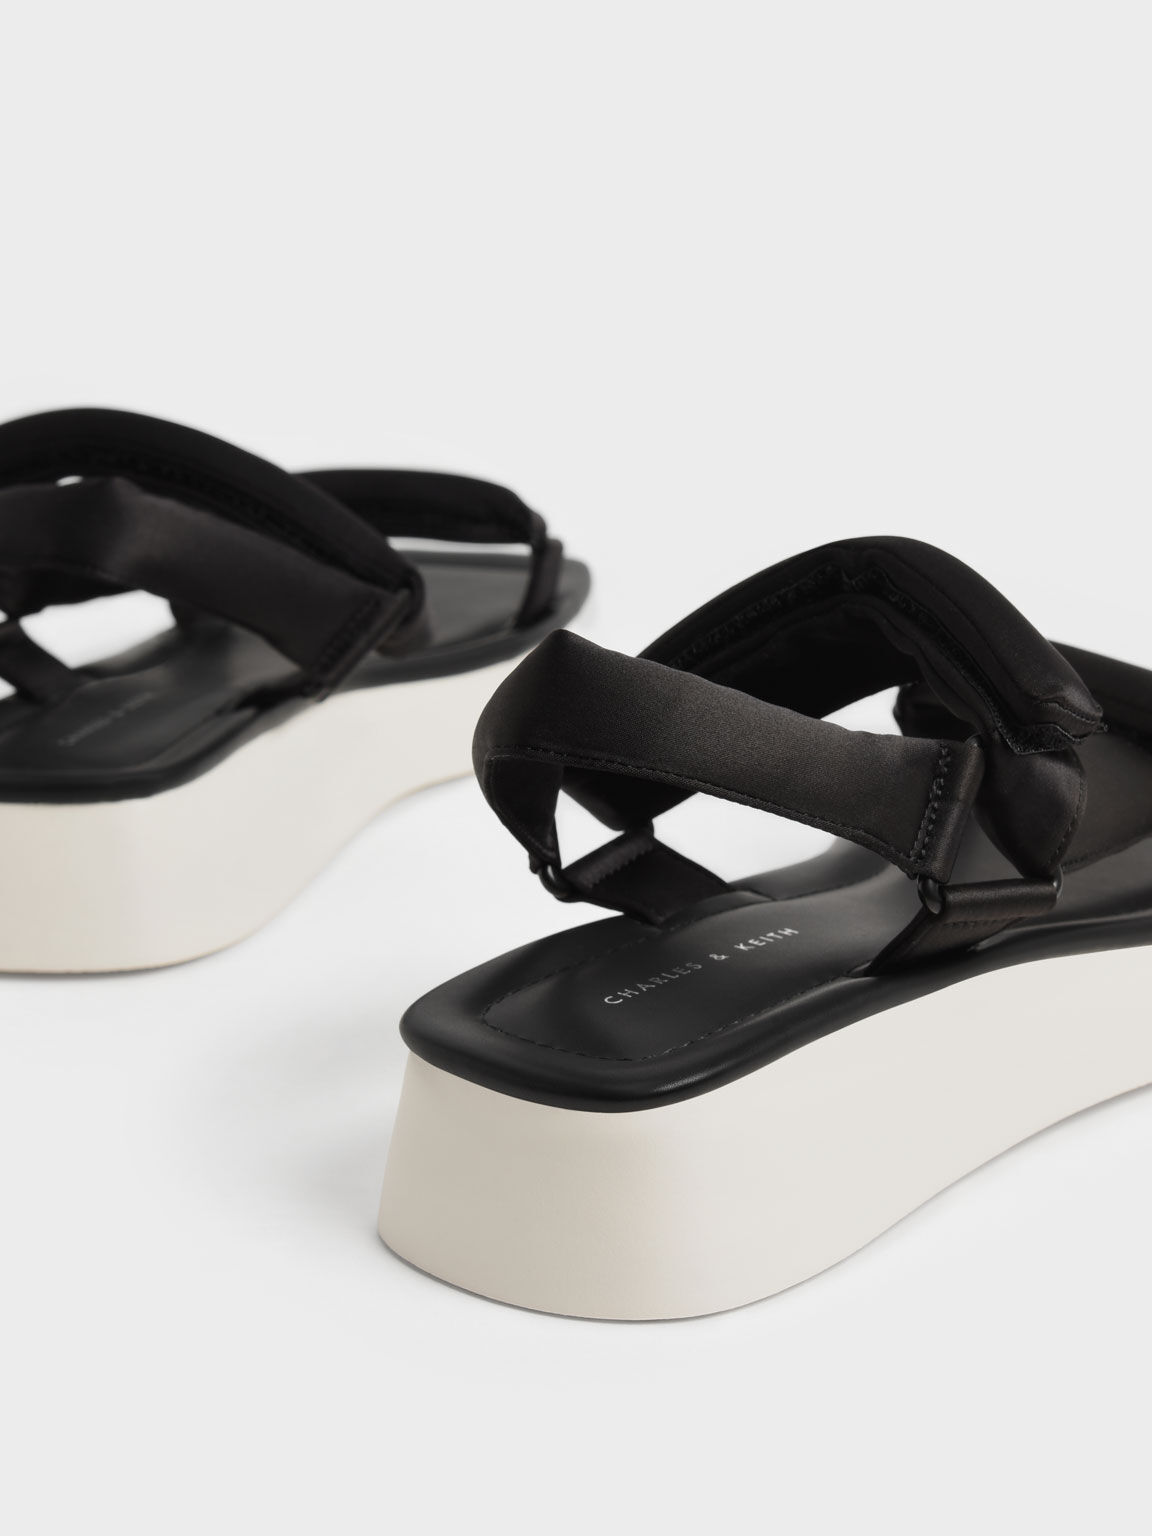 Sandal Flatform Satin Padded Straps, Black, hi-res